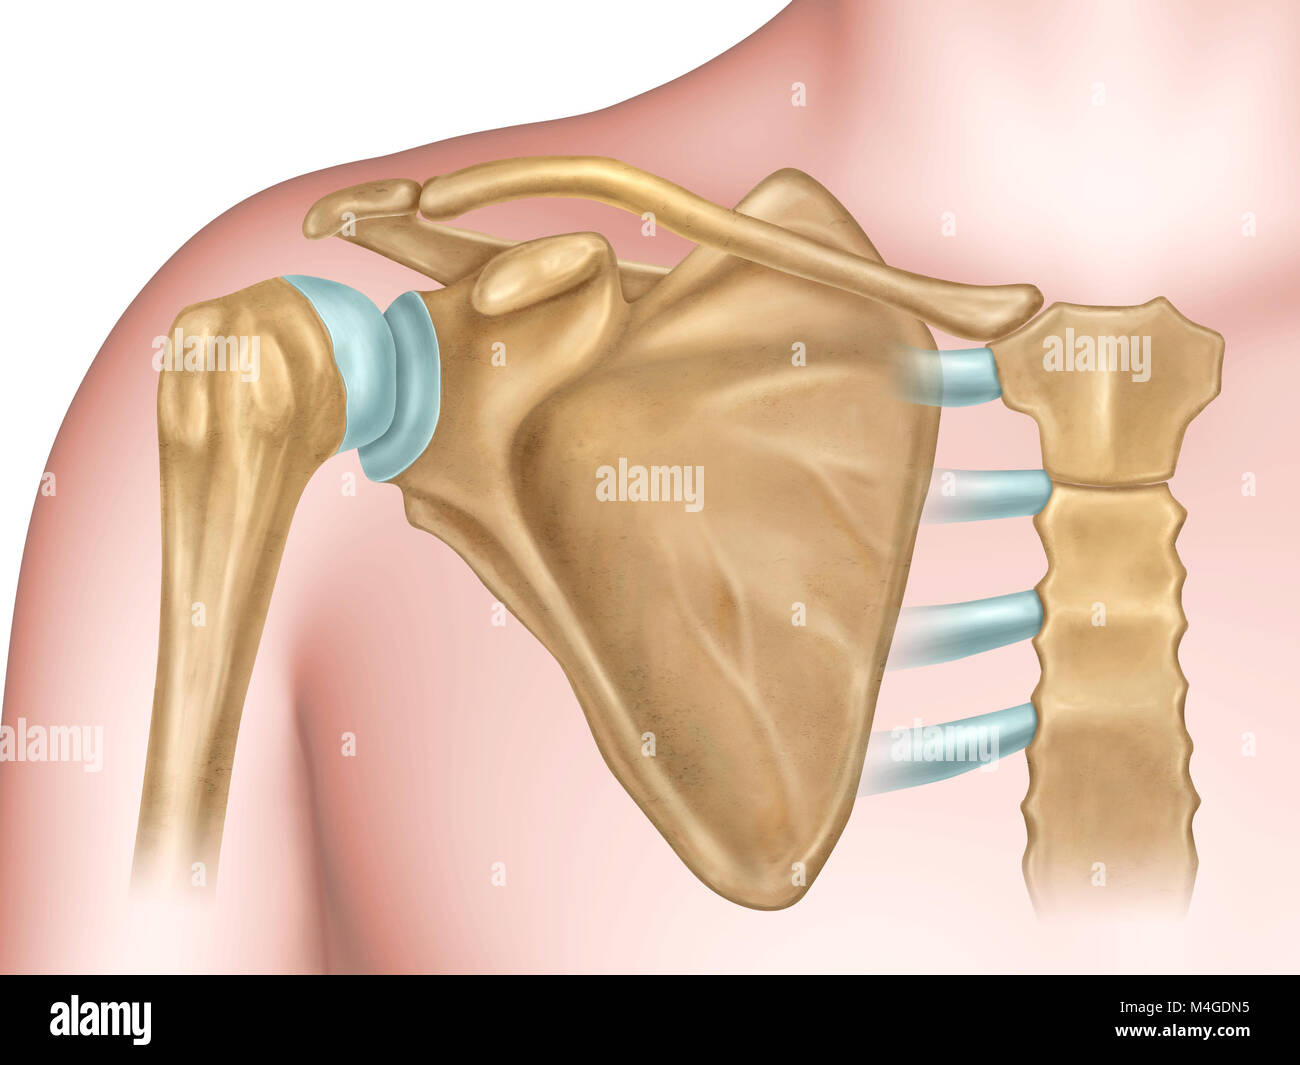 Anteriore Ansicht der Schulter Anatomie. Digitale Illustration. Stockfoto